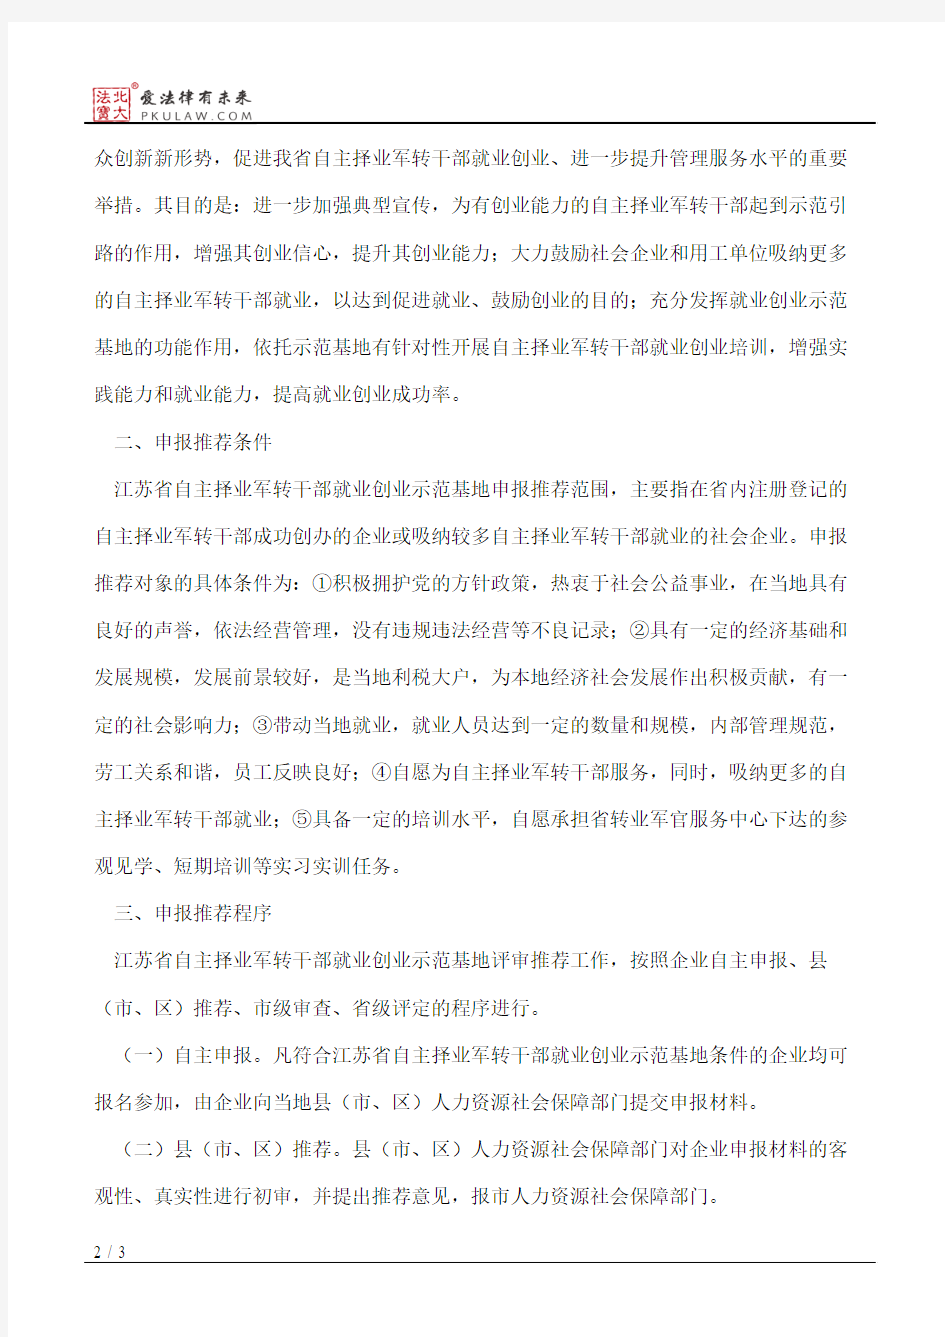 江苏省人力资源和社会保障厅关于开展江苏省自主择业军转干部就业